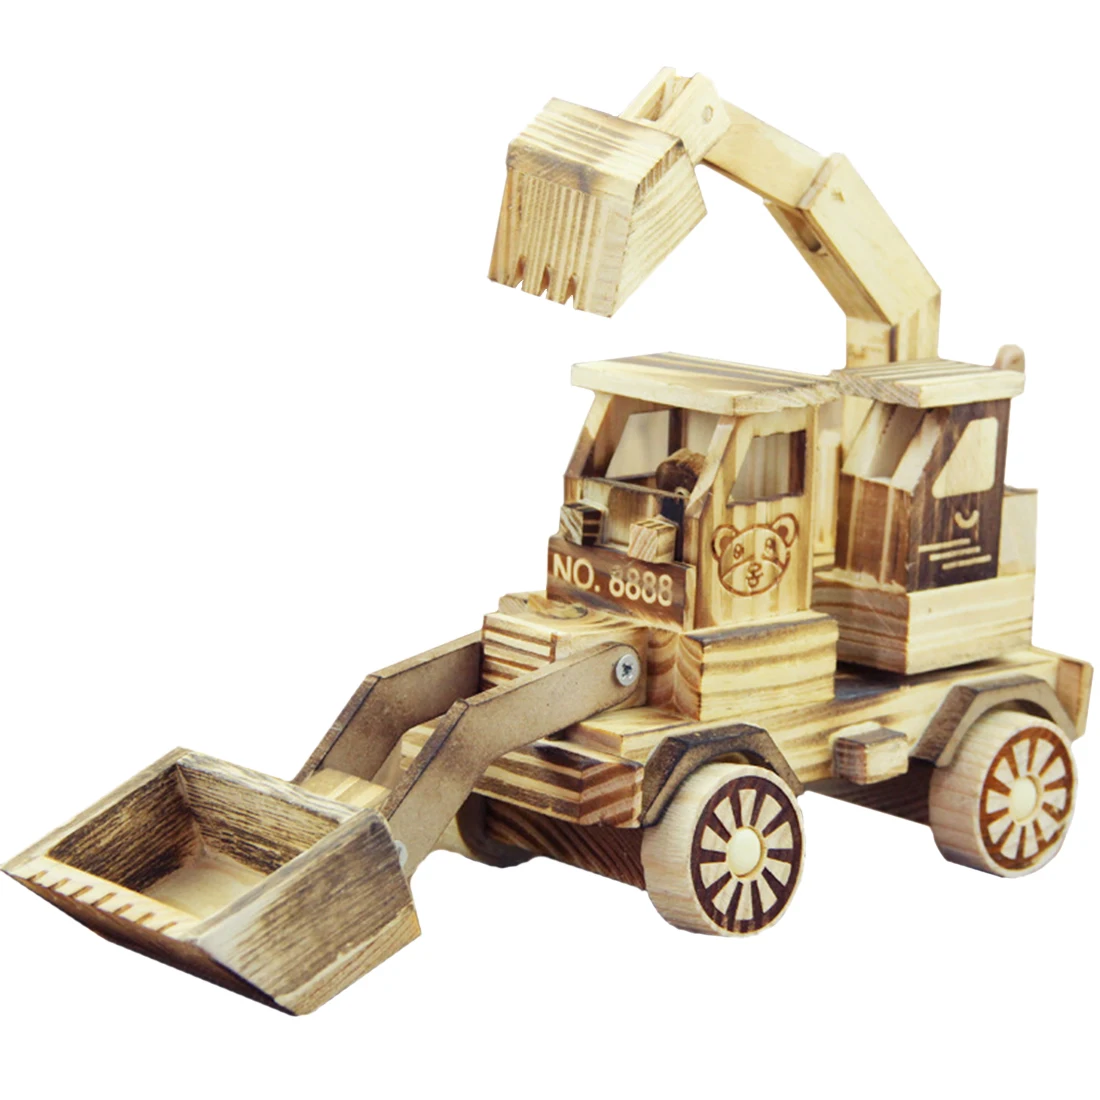 Деревянный Navvy бульдозер Инженерная модель автомобиля Дети Artware украшения игрушка для офис